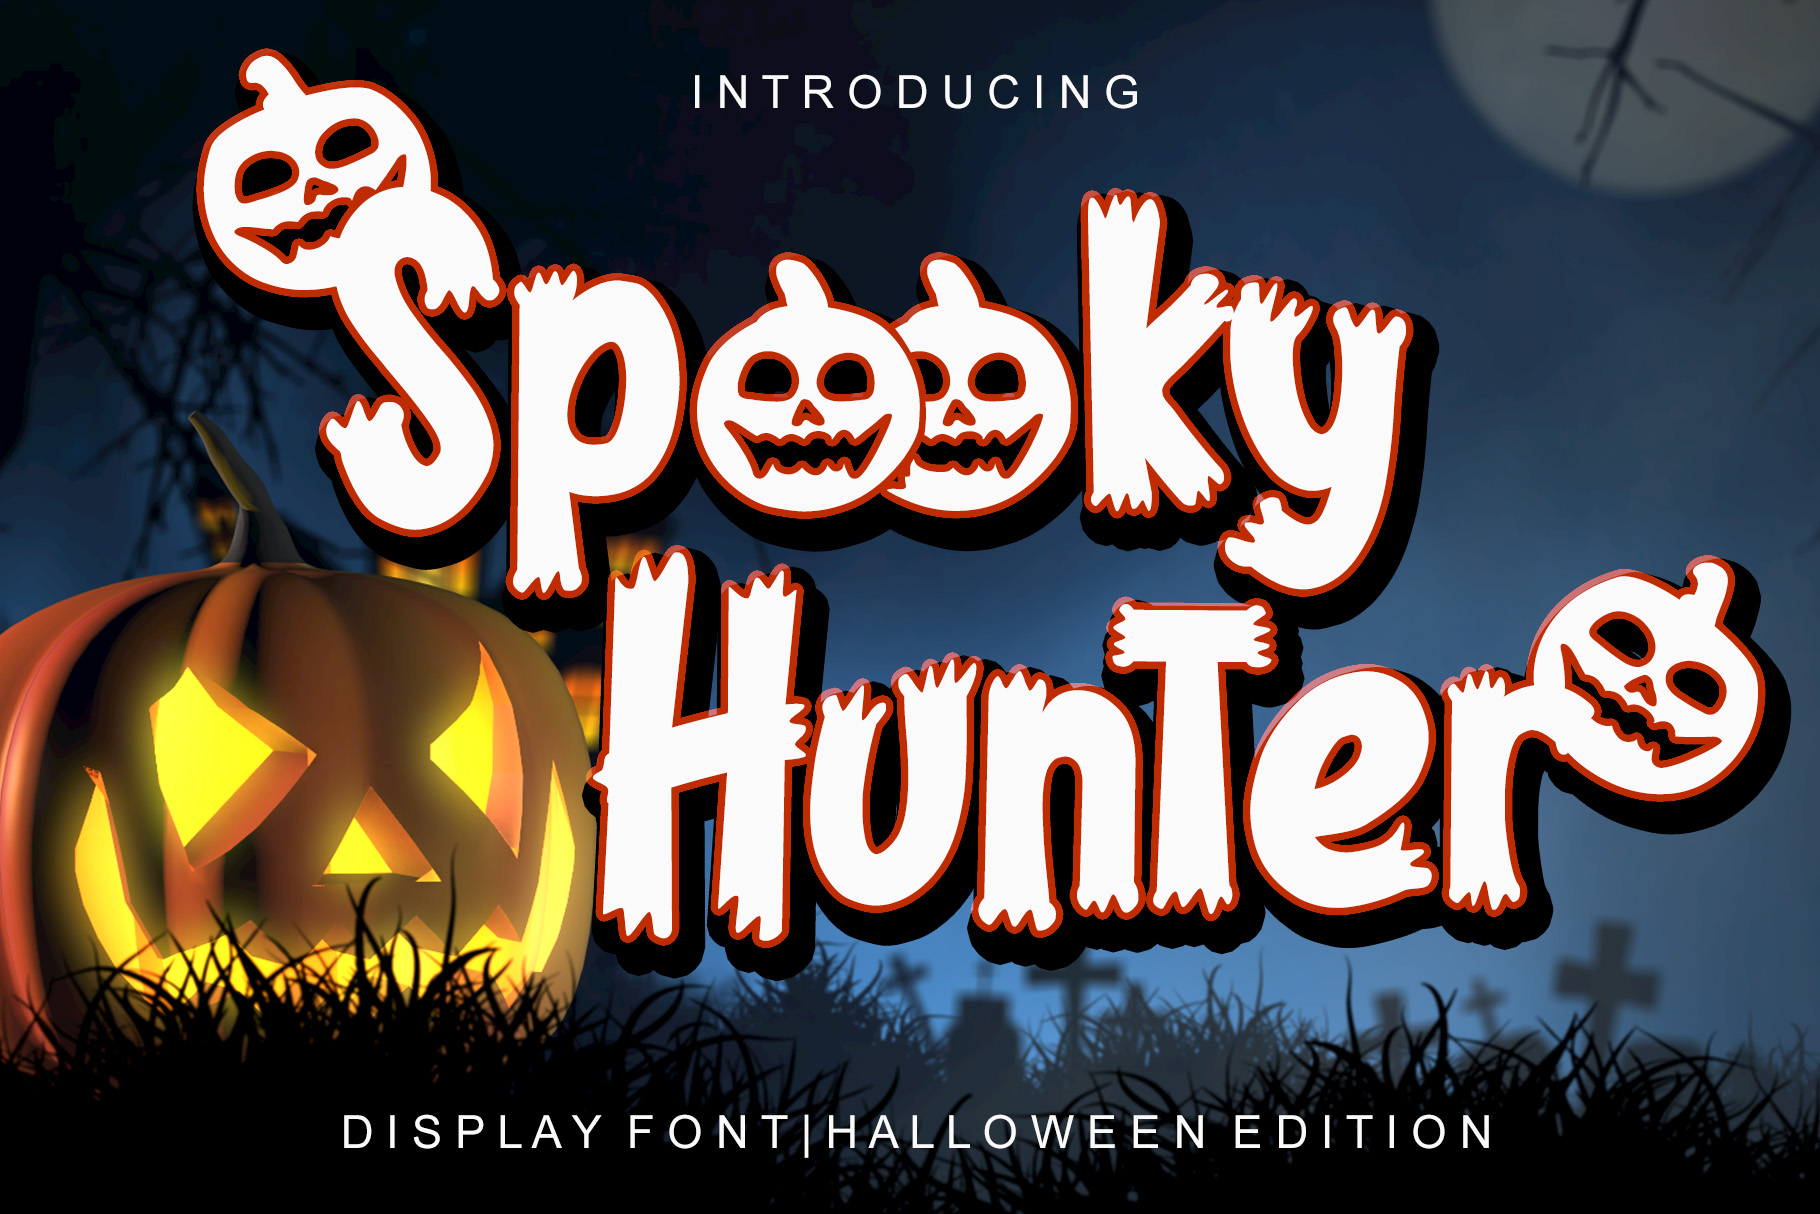 Spooky Hunter